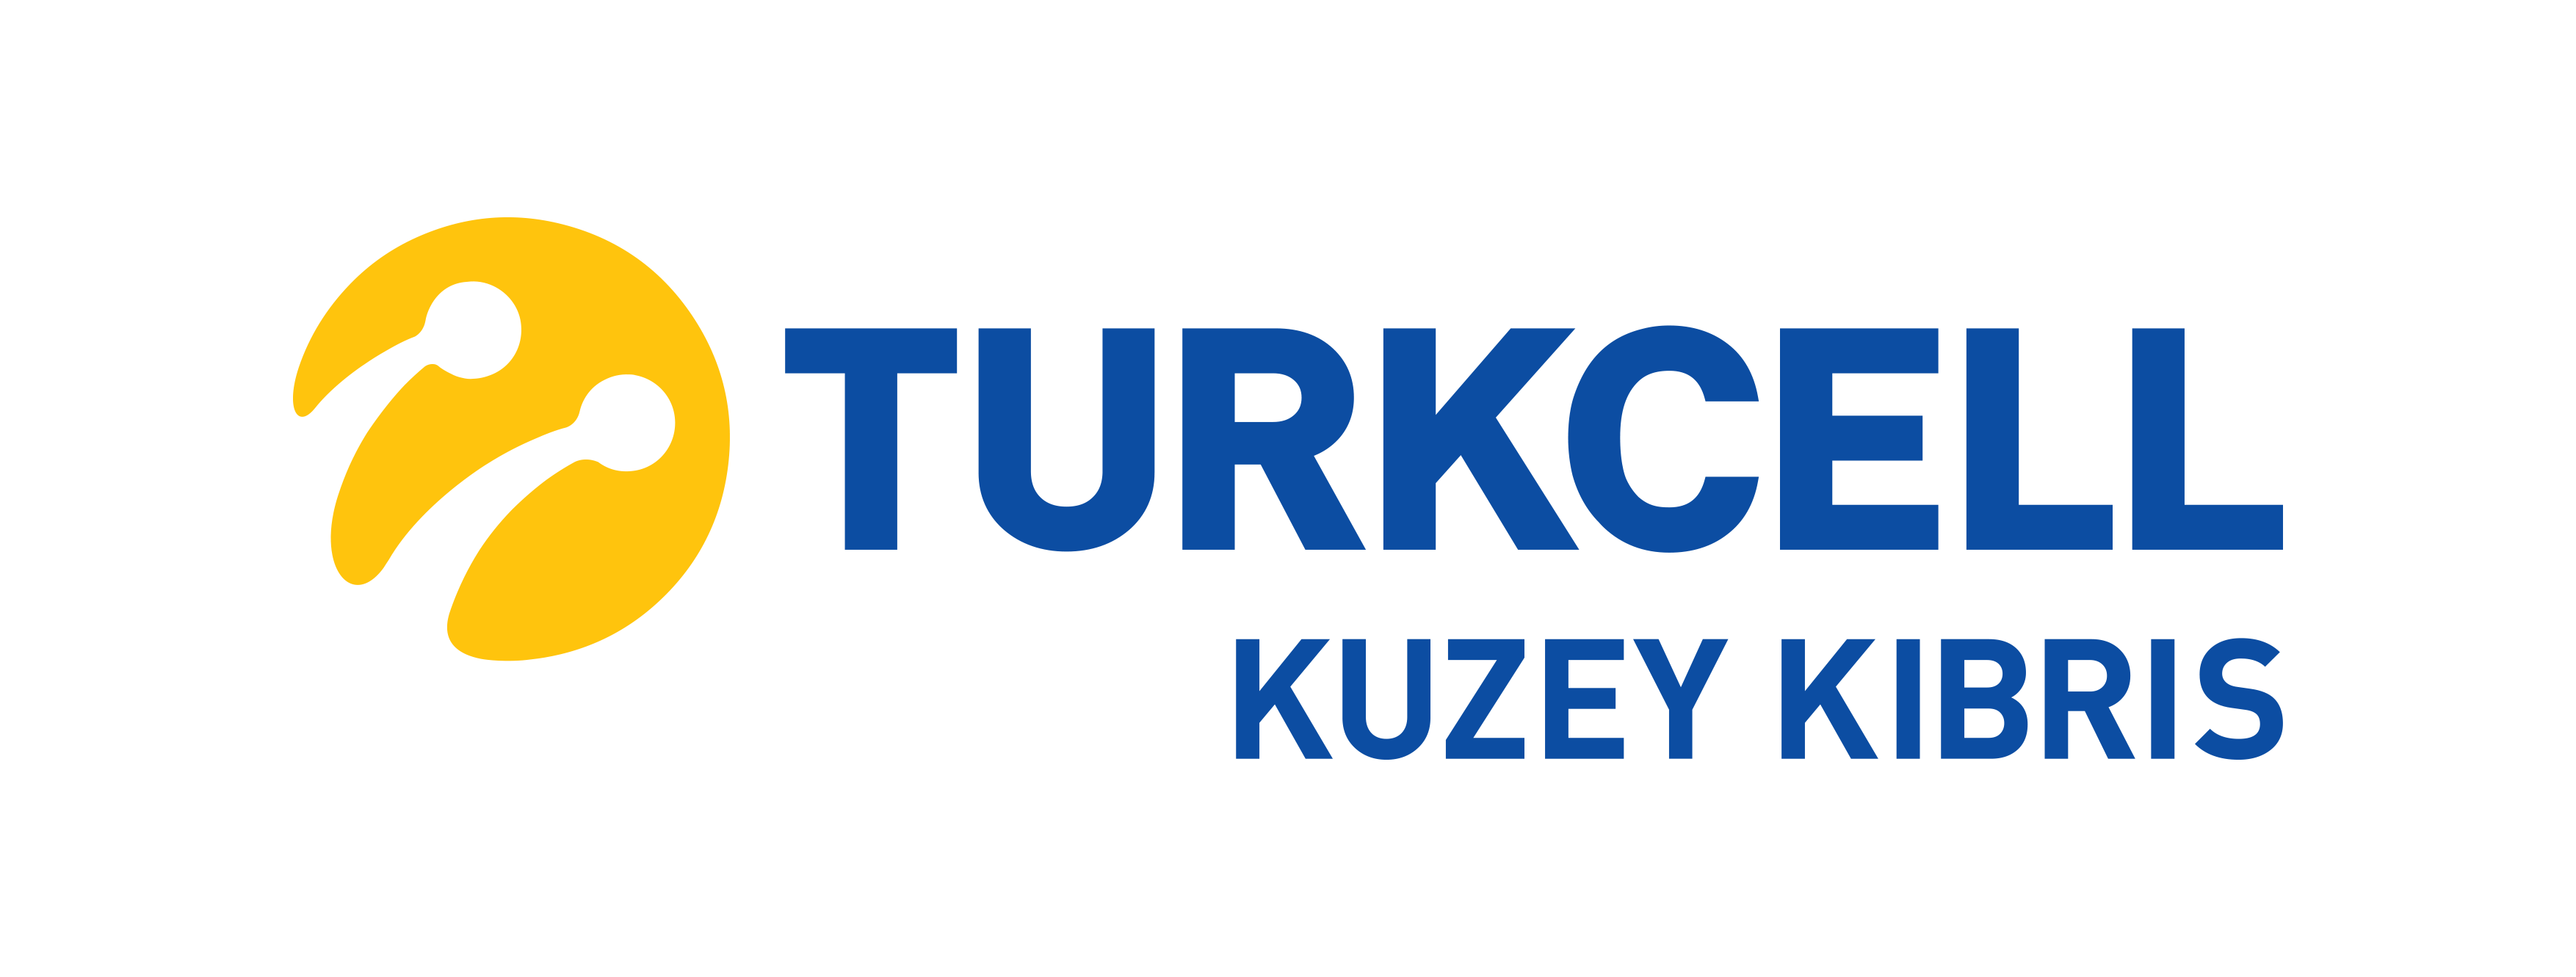 TurkcellKuzeyKibris logo 1